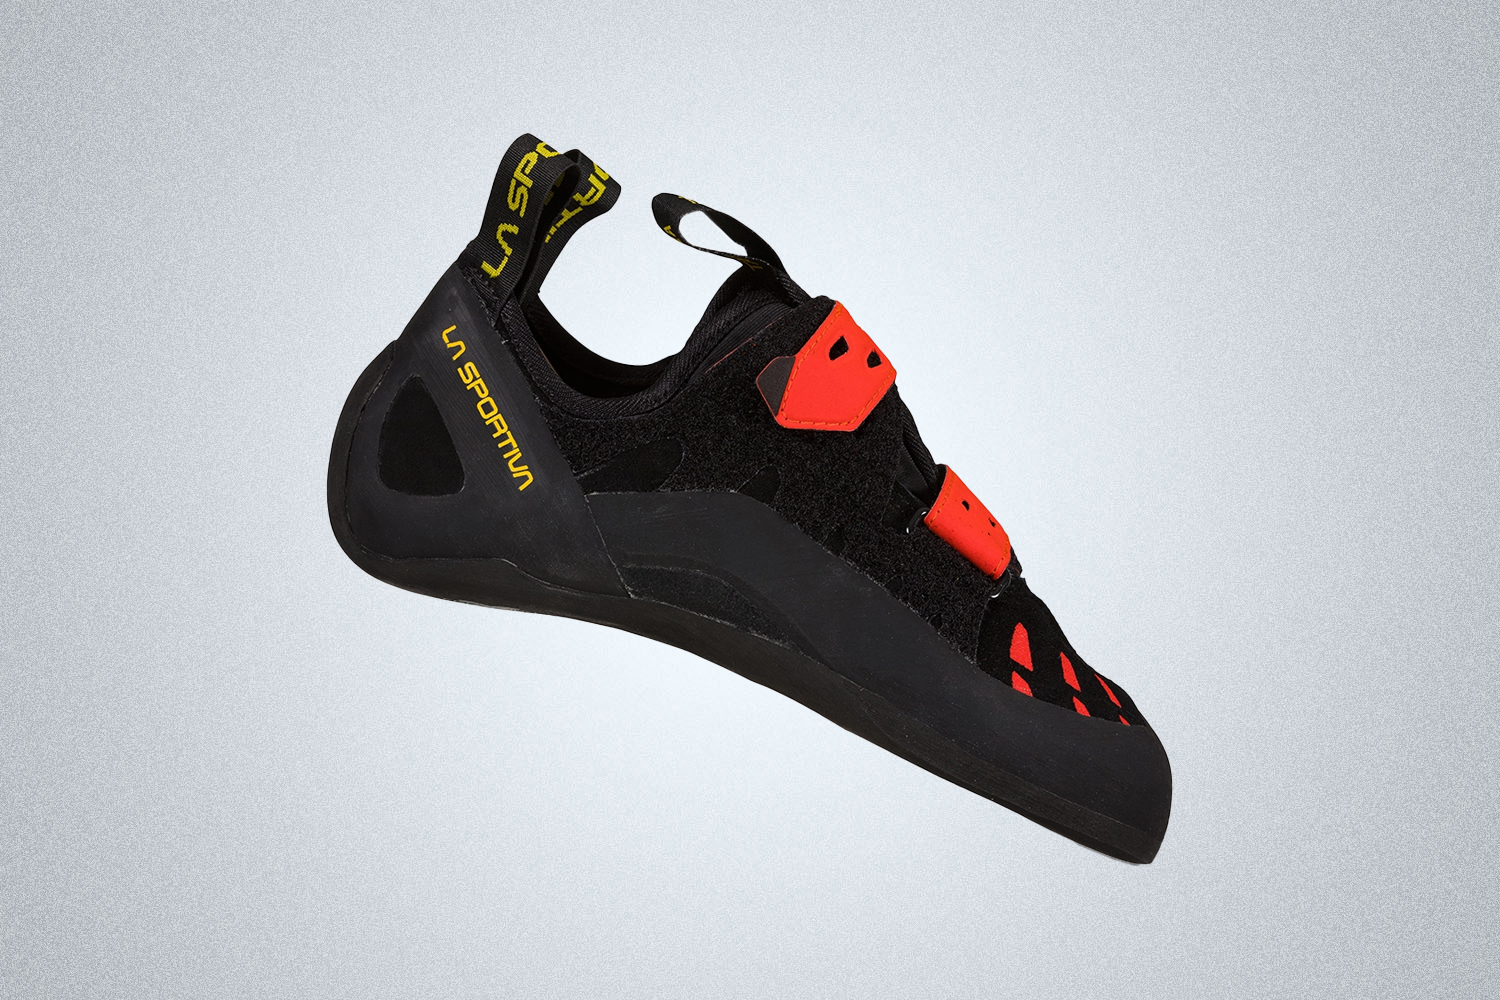 La Sportiva Tarantula is the best climbing shoe for beginners in 2022